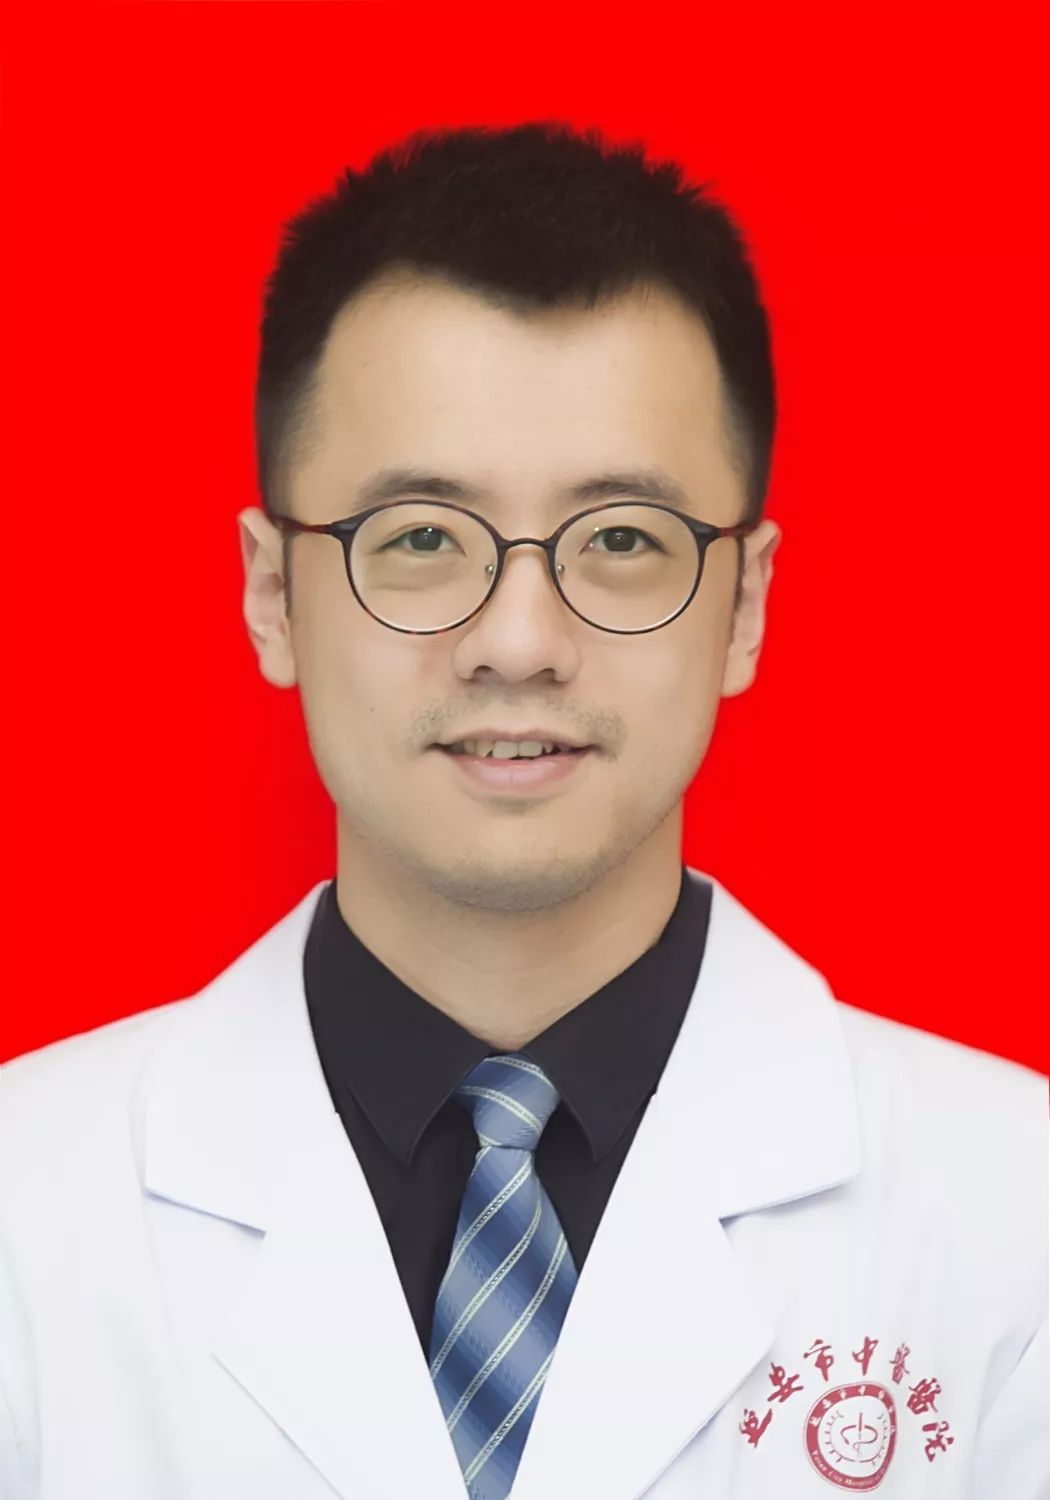 8月17日北京大学第三医院延安分院延安市中医医院神经内科举办大型